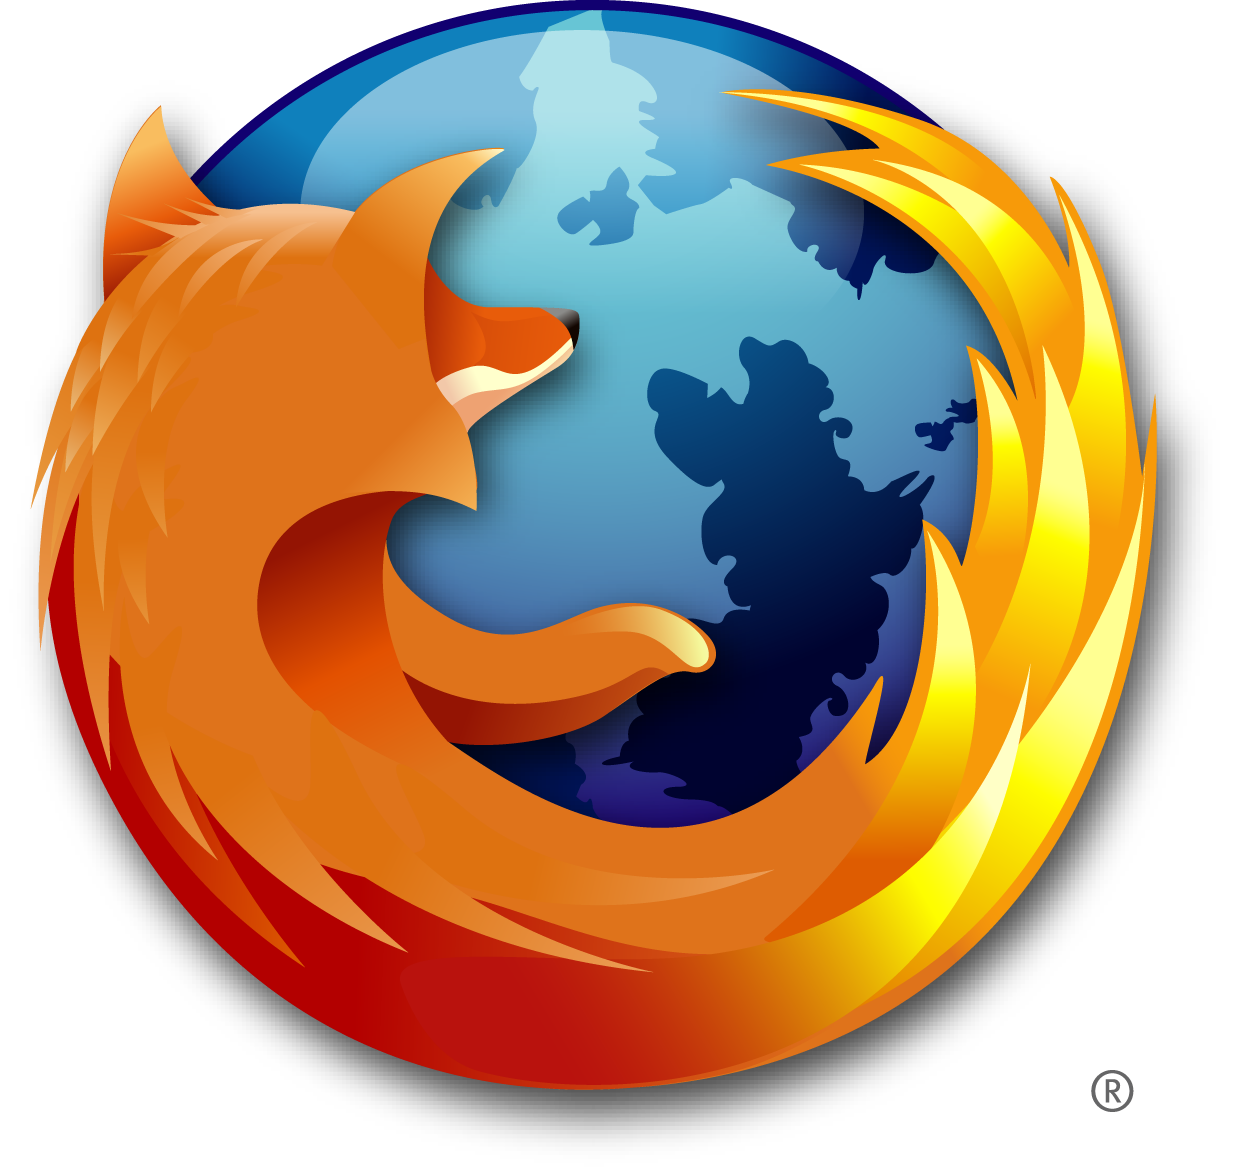 Immagine pubblicata in relazione al seguente contenuto: Mozilla rilascia Firefox 3.0.10 per Windows, Linux e Mac OS X | Nome immagine: news10237_1.png